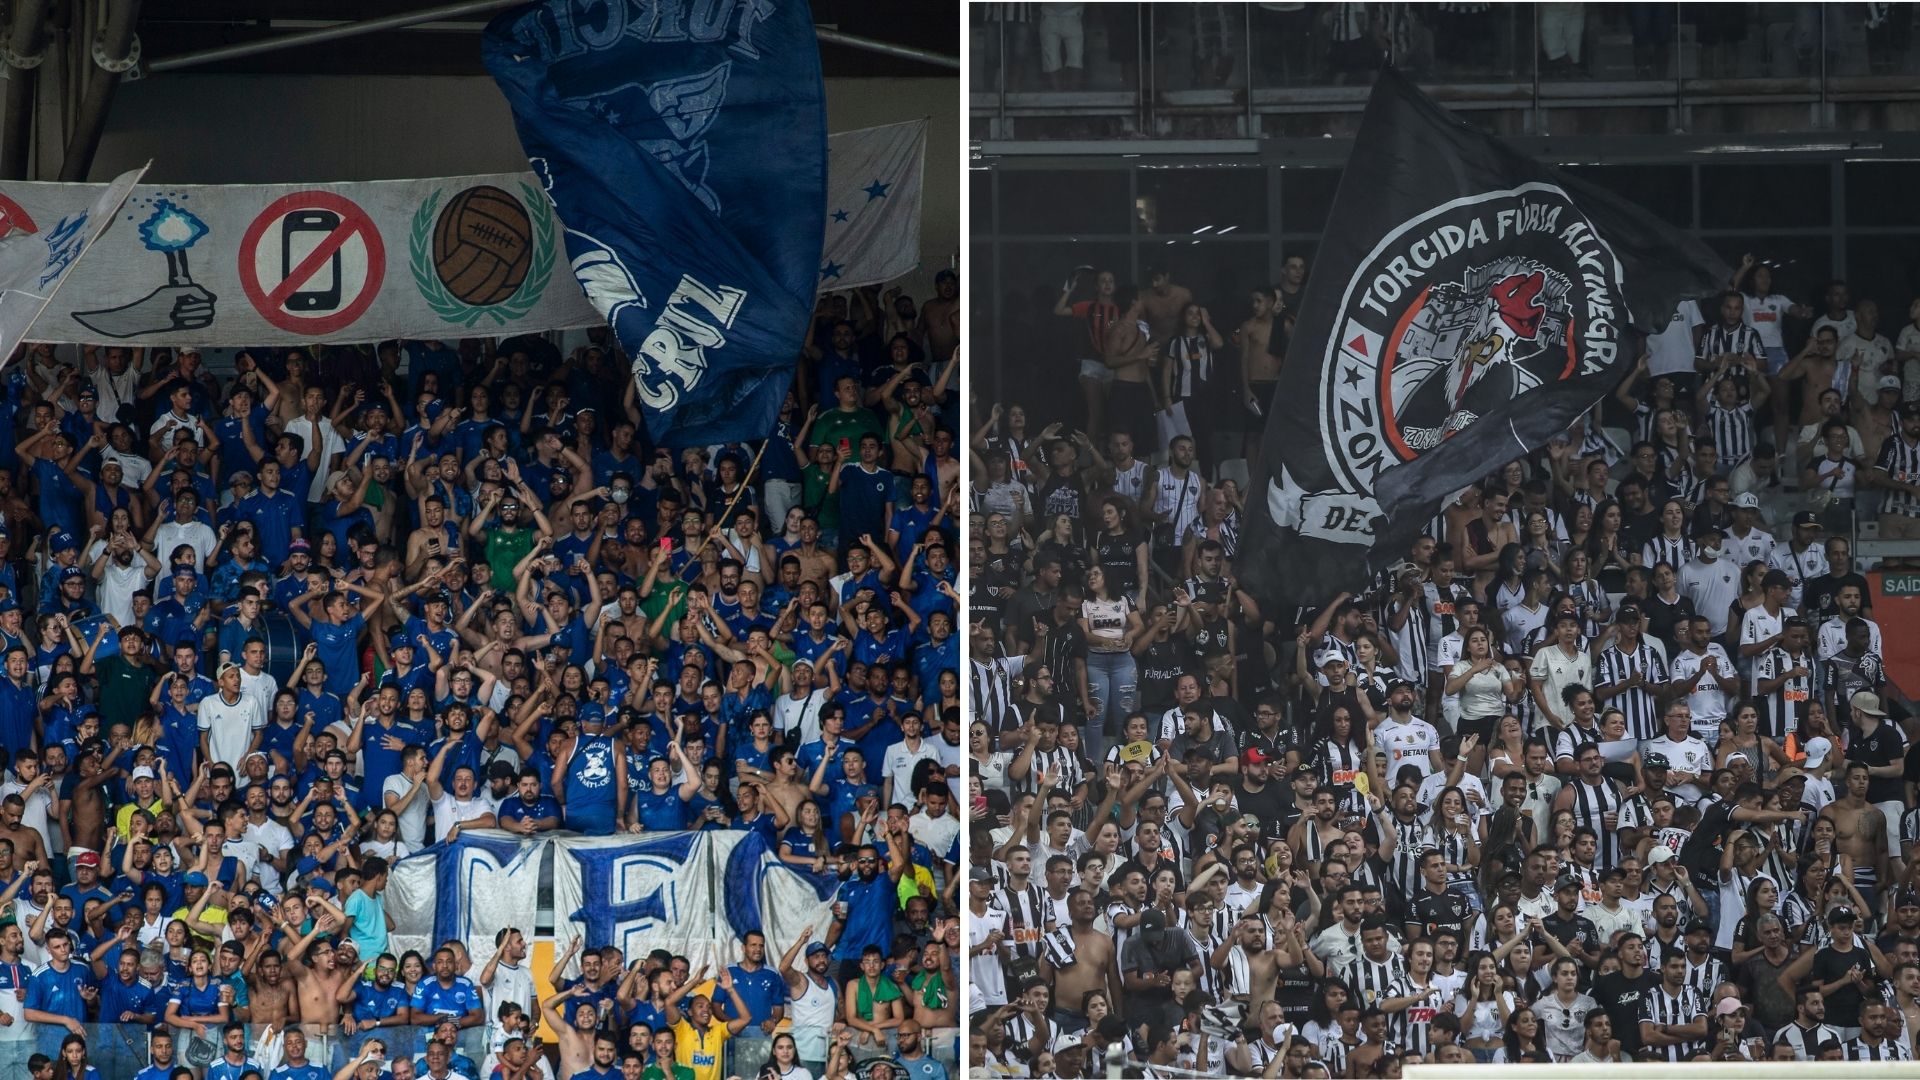 Torcidas de Cruzeiro e Atlético-MG